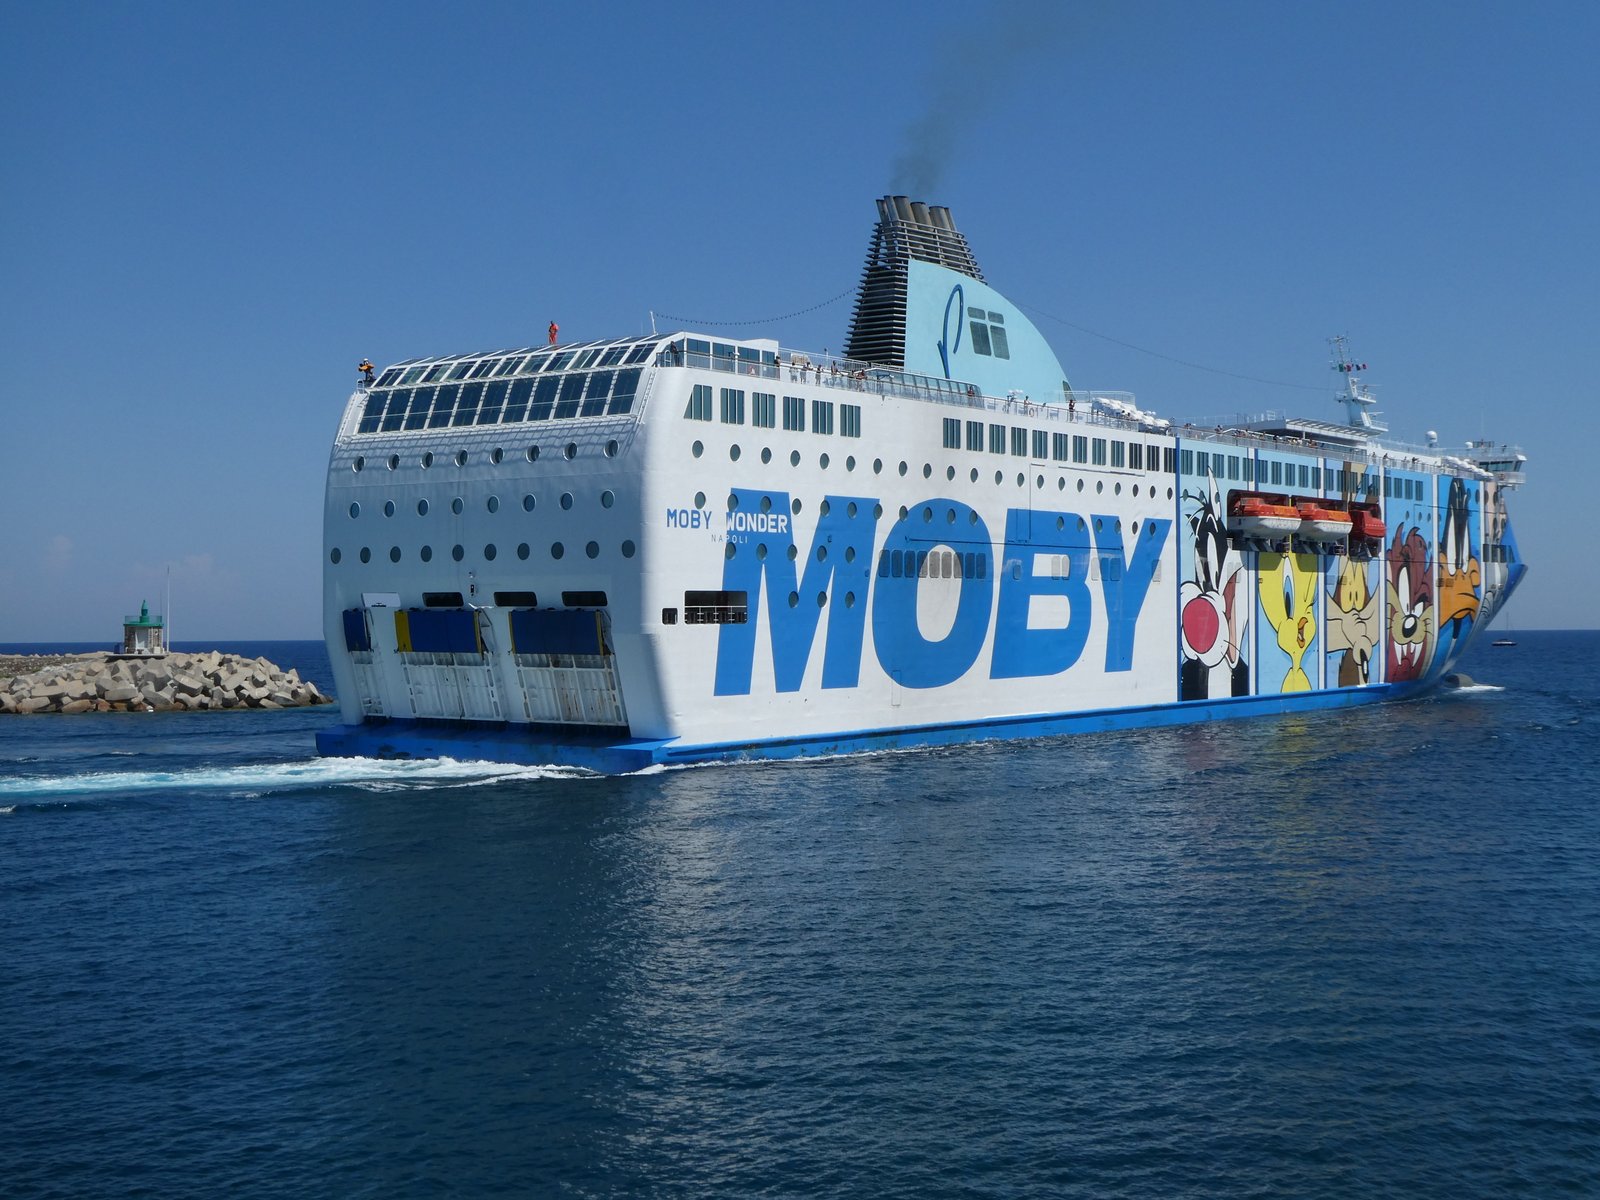 Moby Wonder quittant Bastia, en juillet 2020 ; photo : Romain Roussel